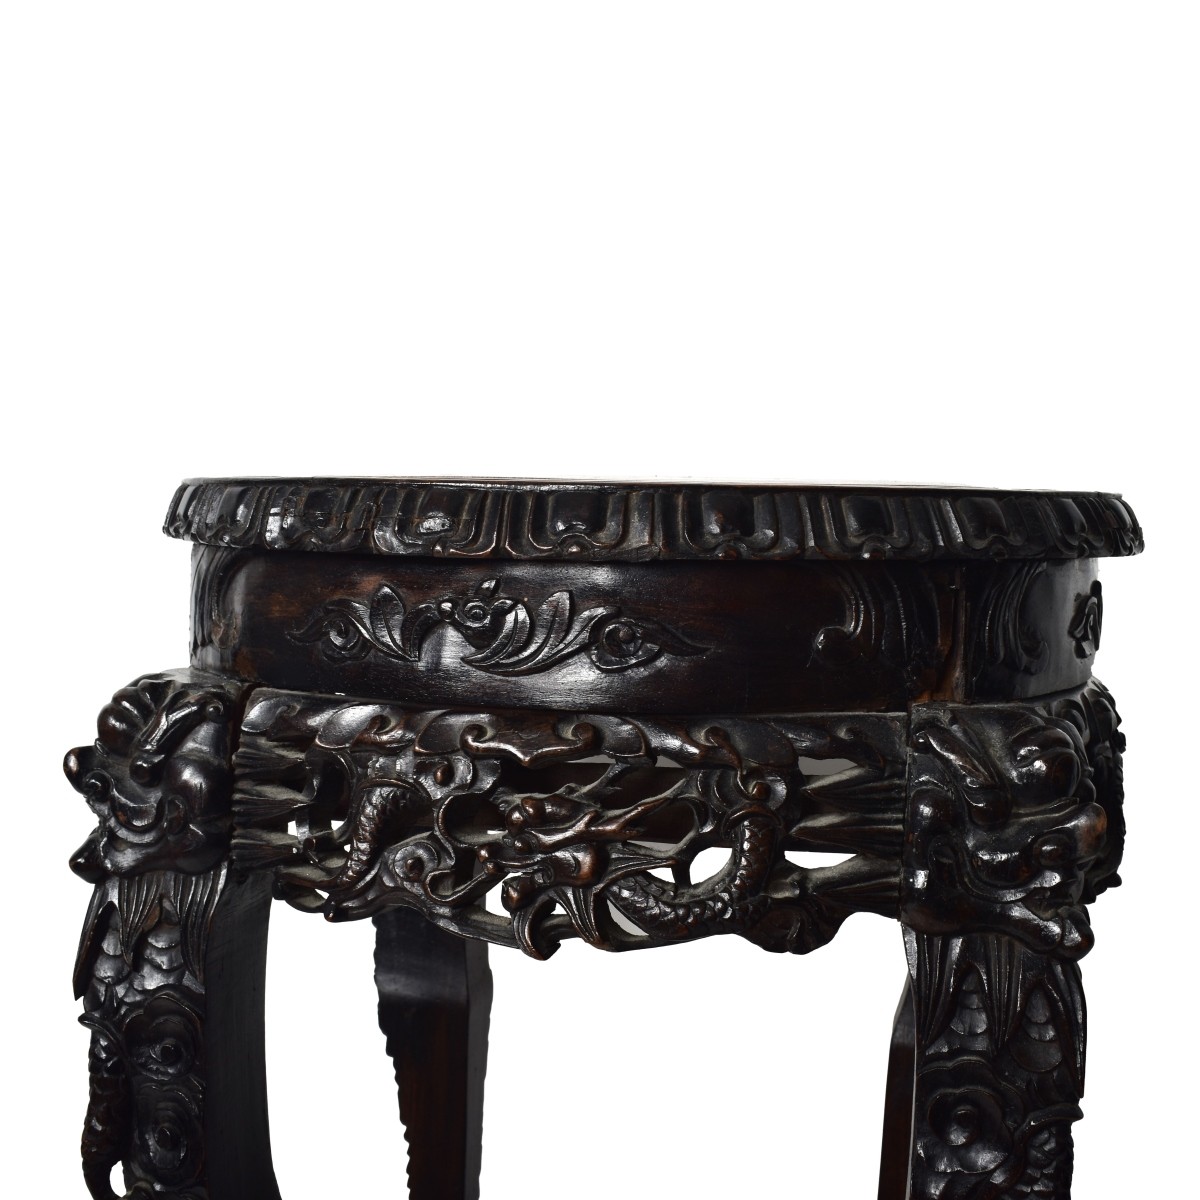 Chinese Marble & Hardwood Pedestal